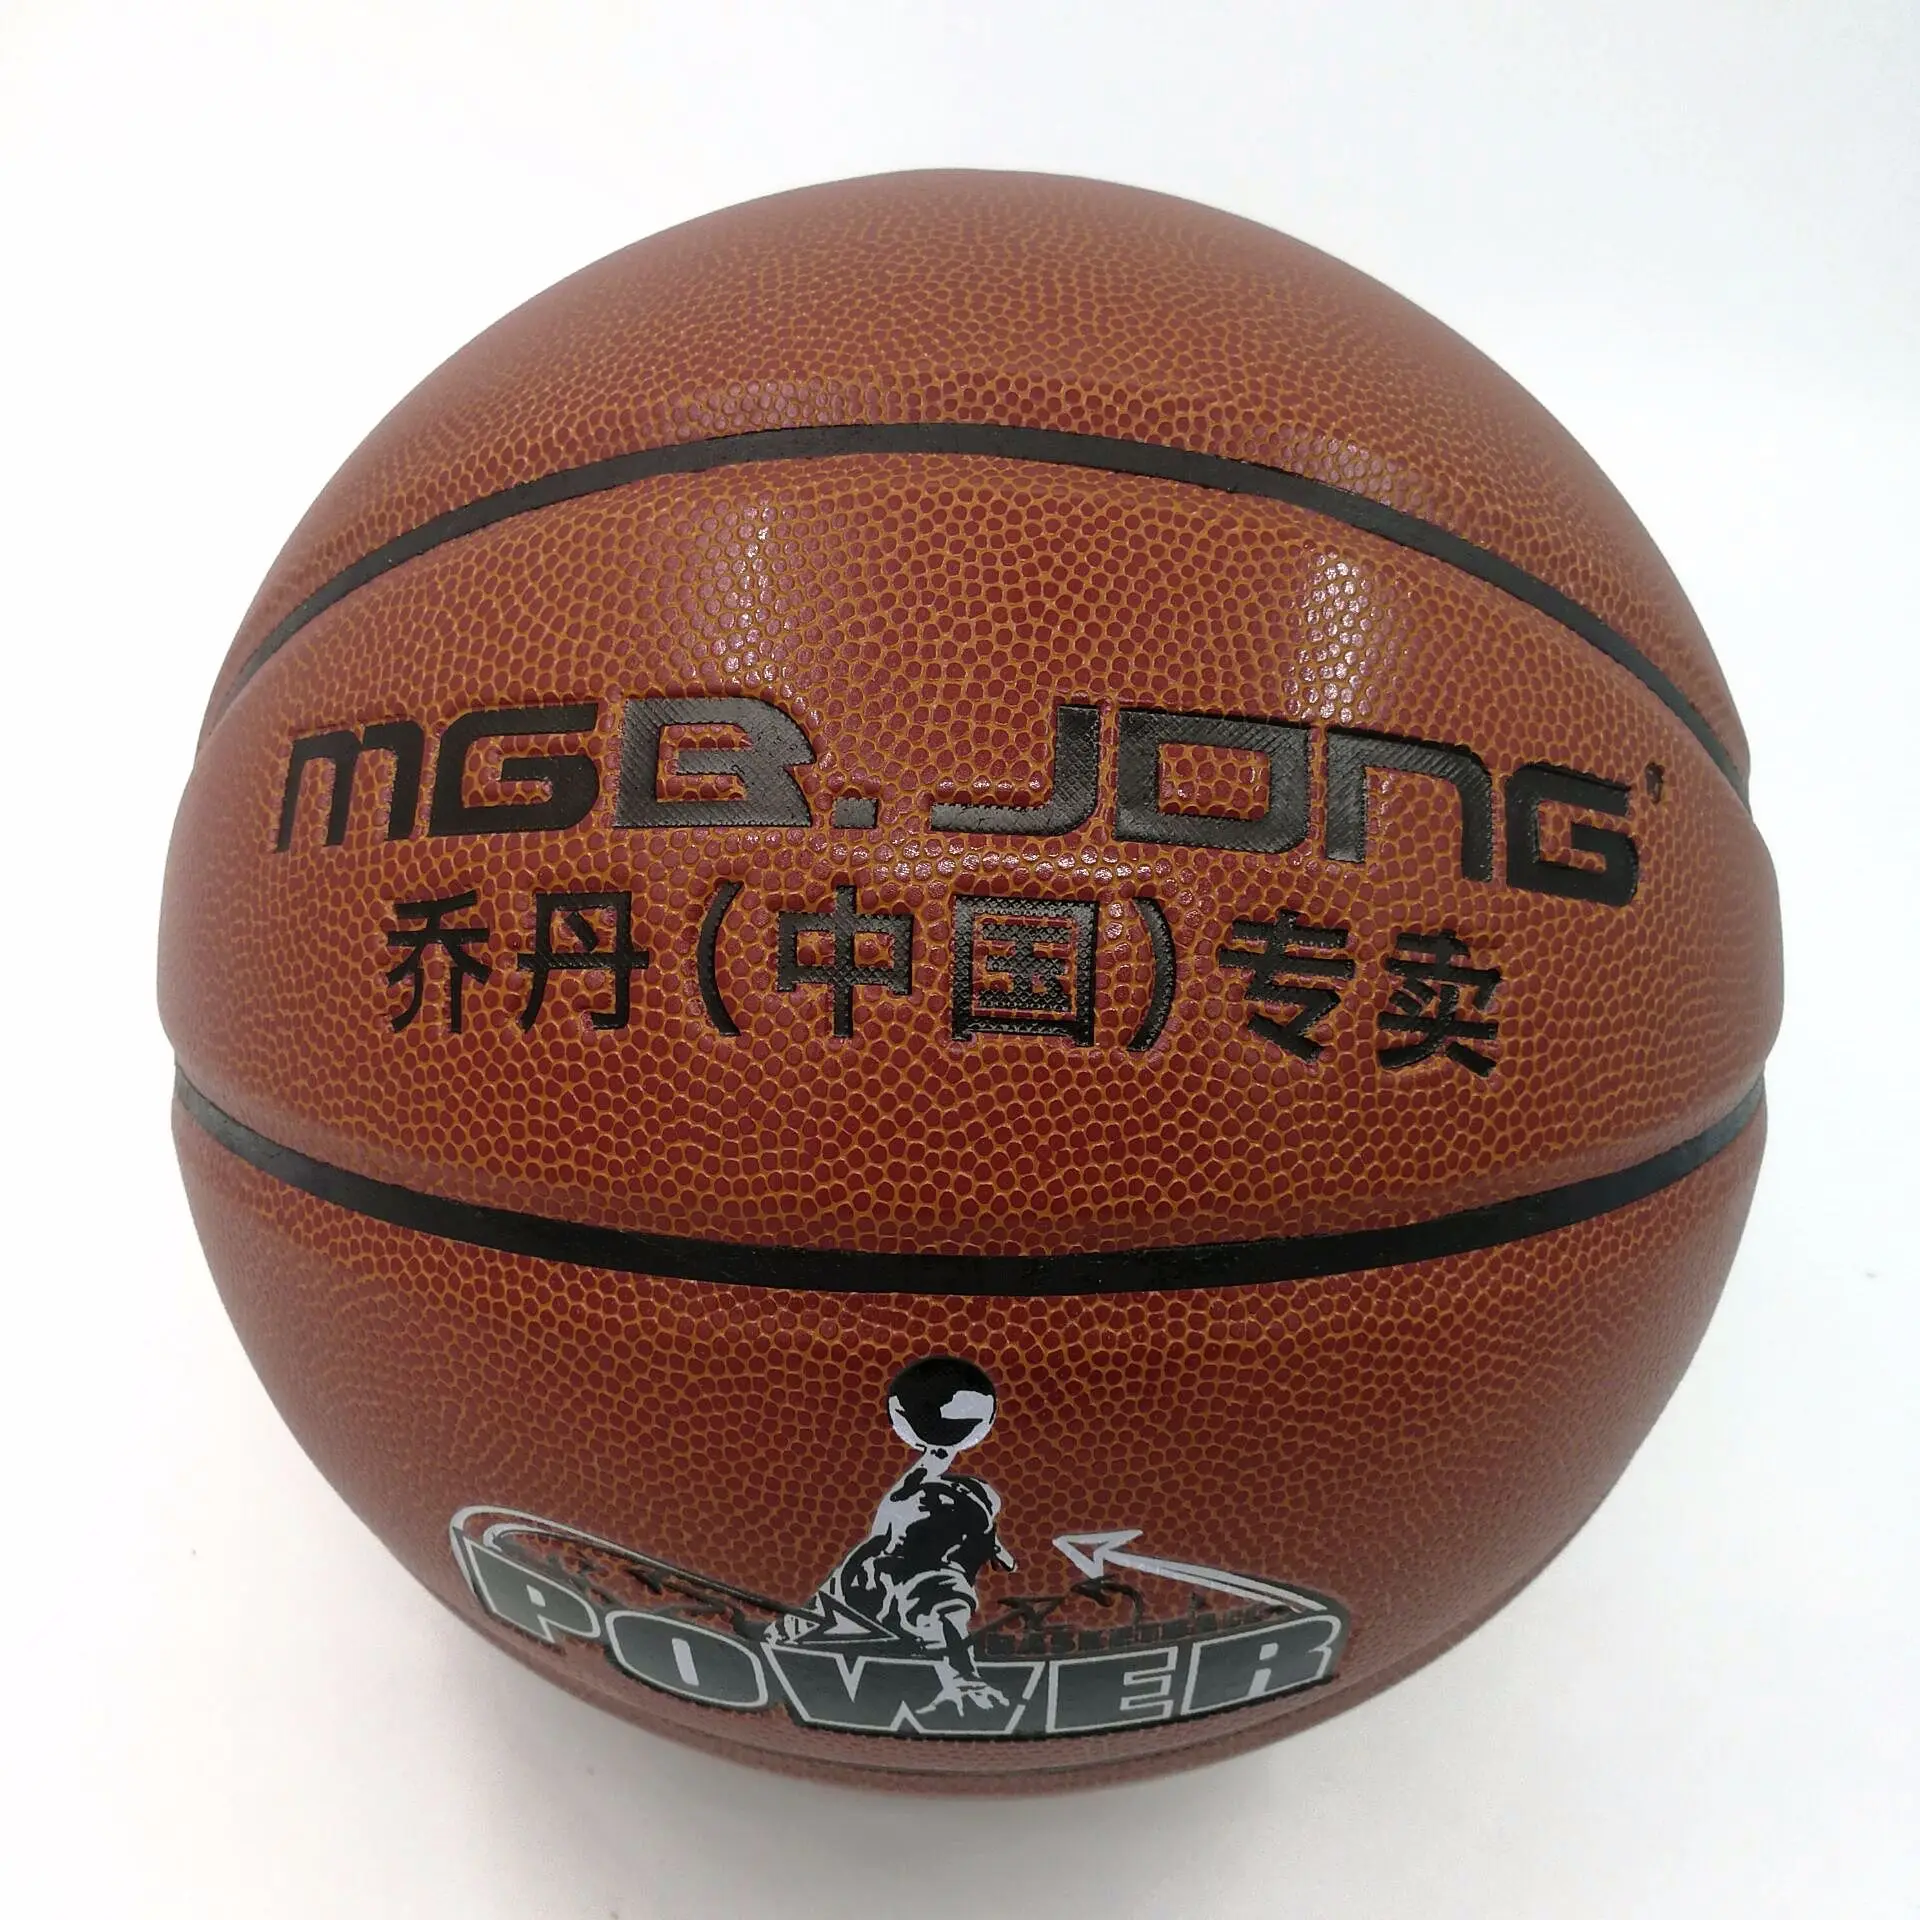 MGB. jdng Nike Air Jordan баскетбольная № 7 для взрослых и детей в помещении и на открытом воздухе игры шарик из ПУ 661 противоскользящая износостойкая Handfee